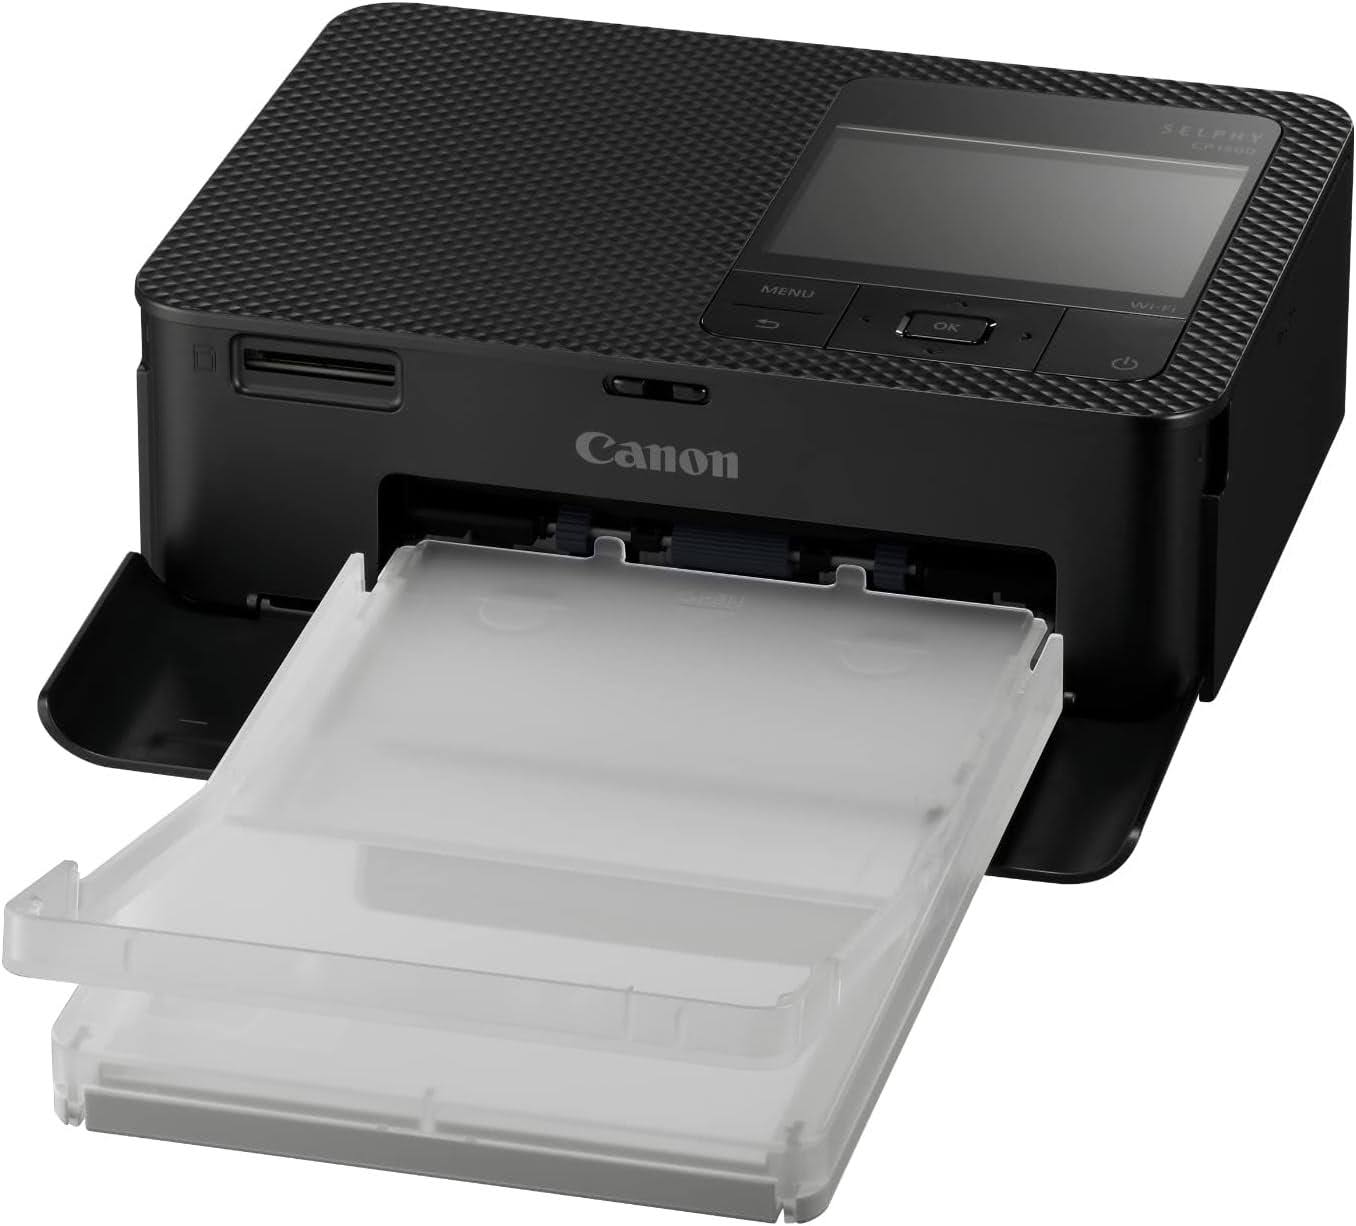 Canon SELPHY CP1500 Wireless Compact Photo Printer | Taste As You Go